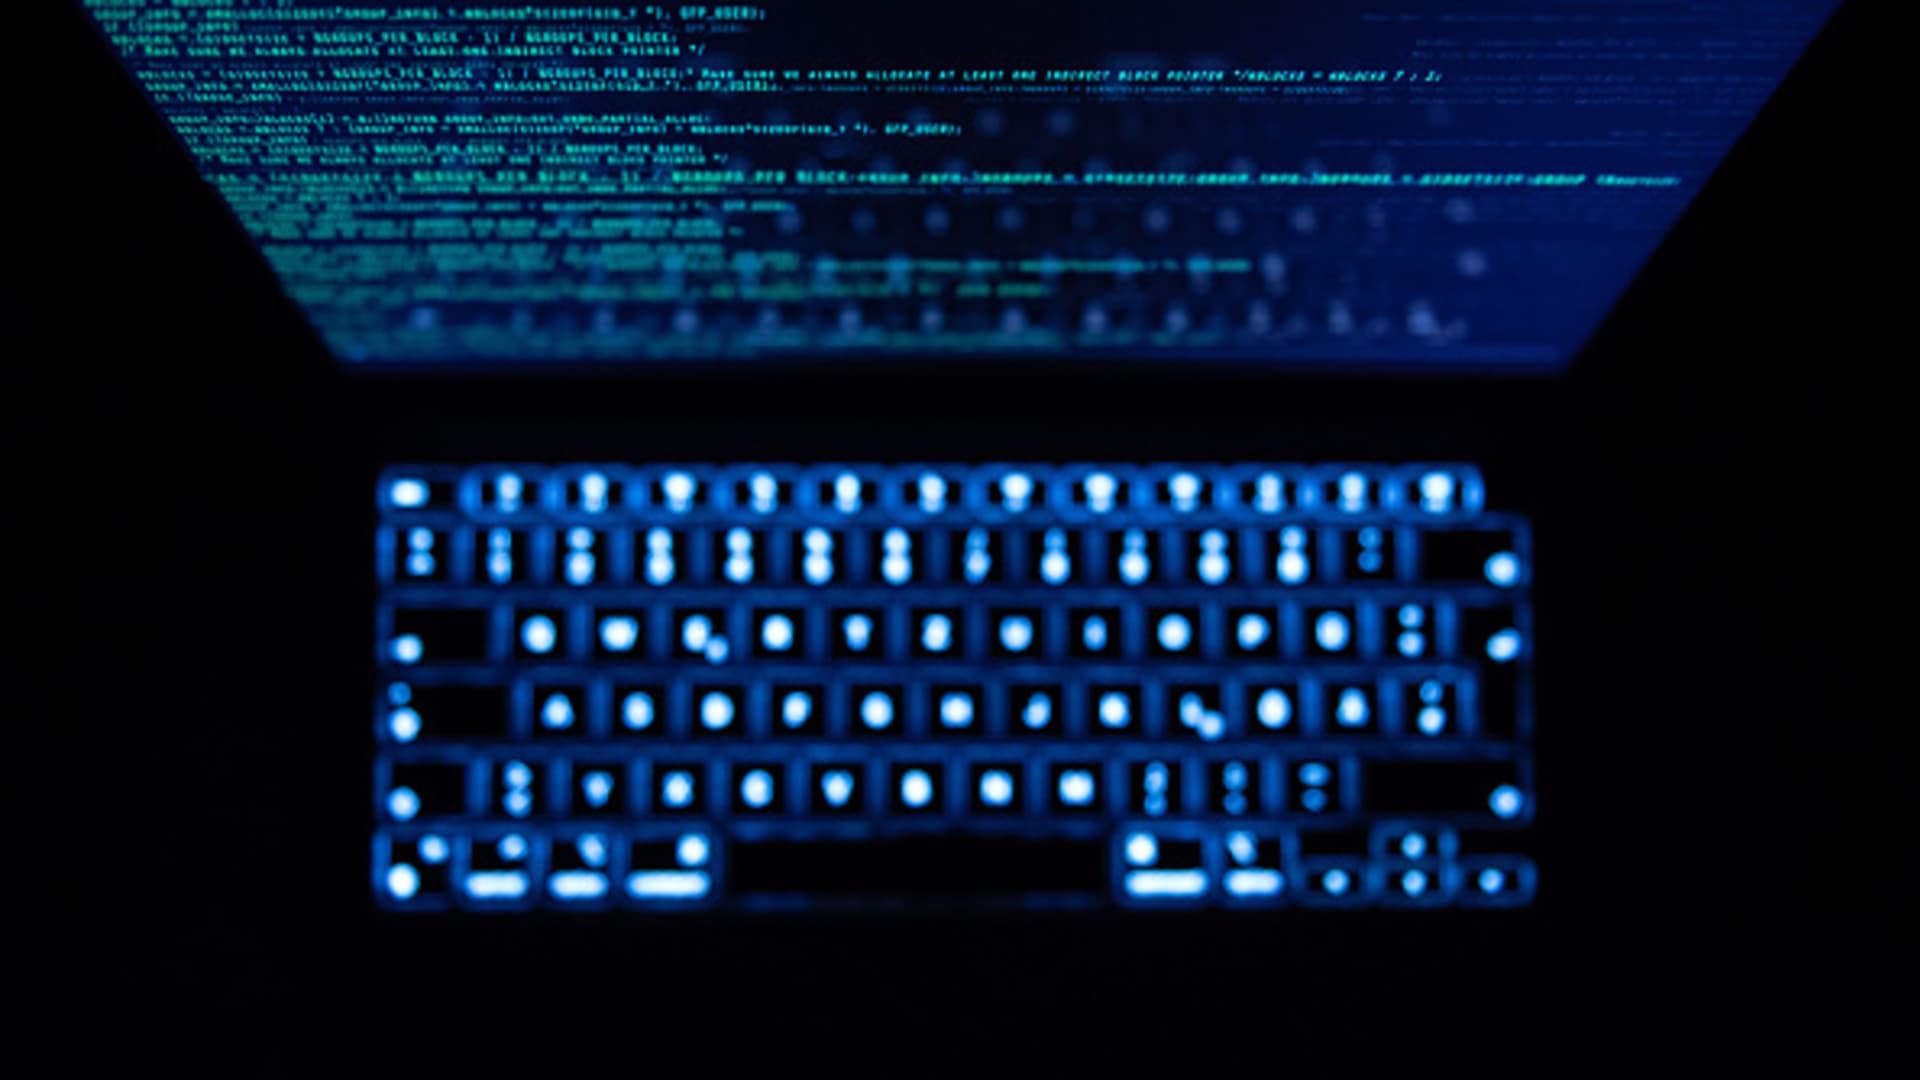 Nettangrep rammer Norge, mistenkt pro-russisk hackergruppe